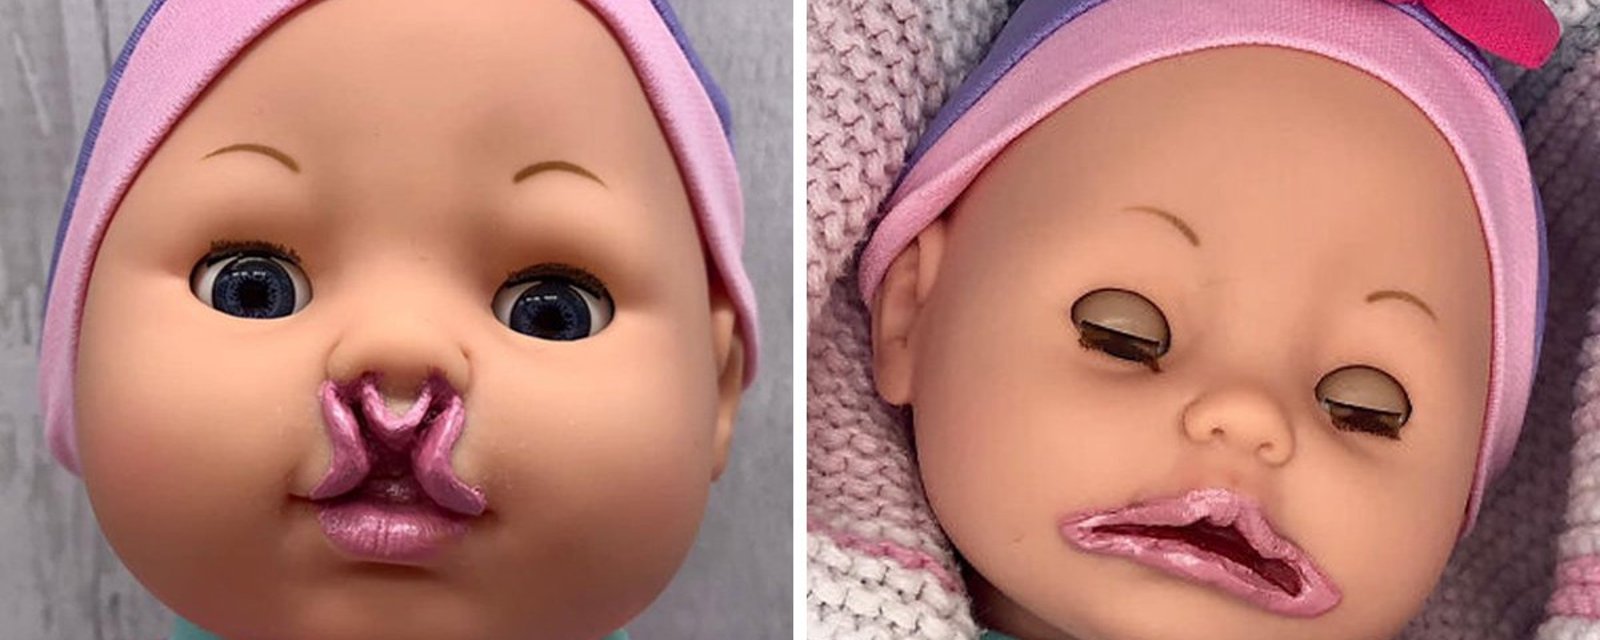 Une maman s’est mise à fabriquer des poupées inclusives car elle n’en trouvait pas pour sa propre fille